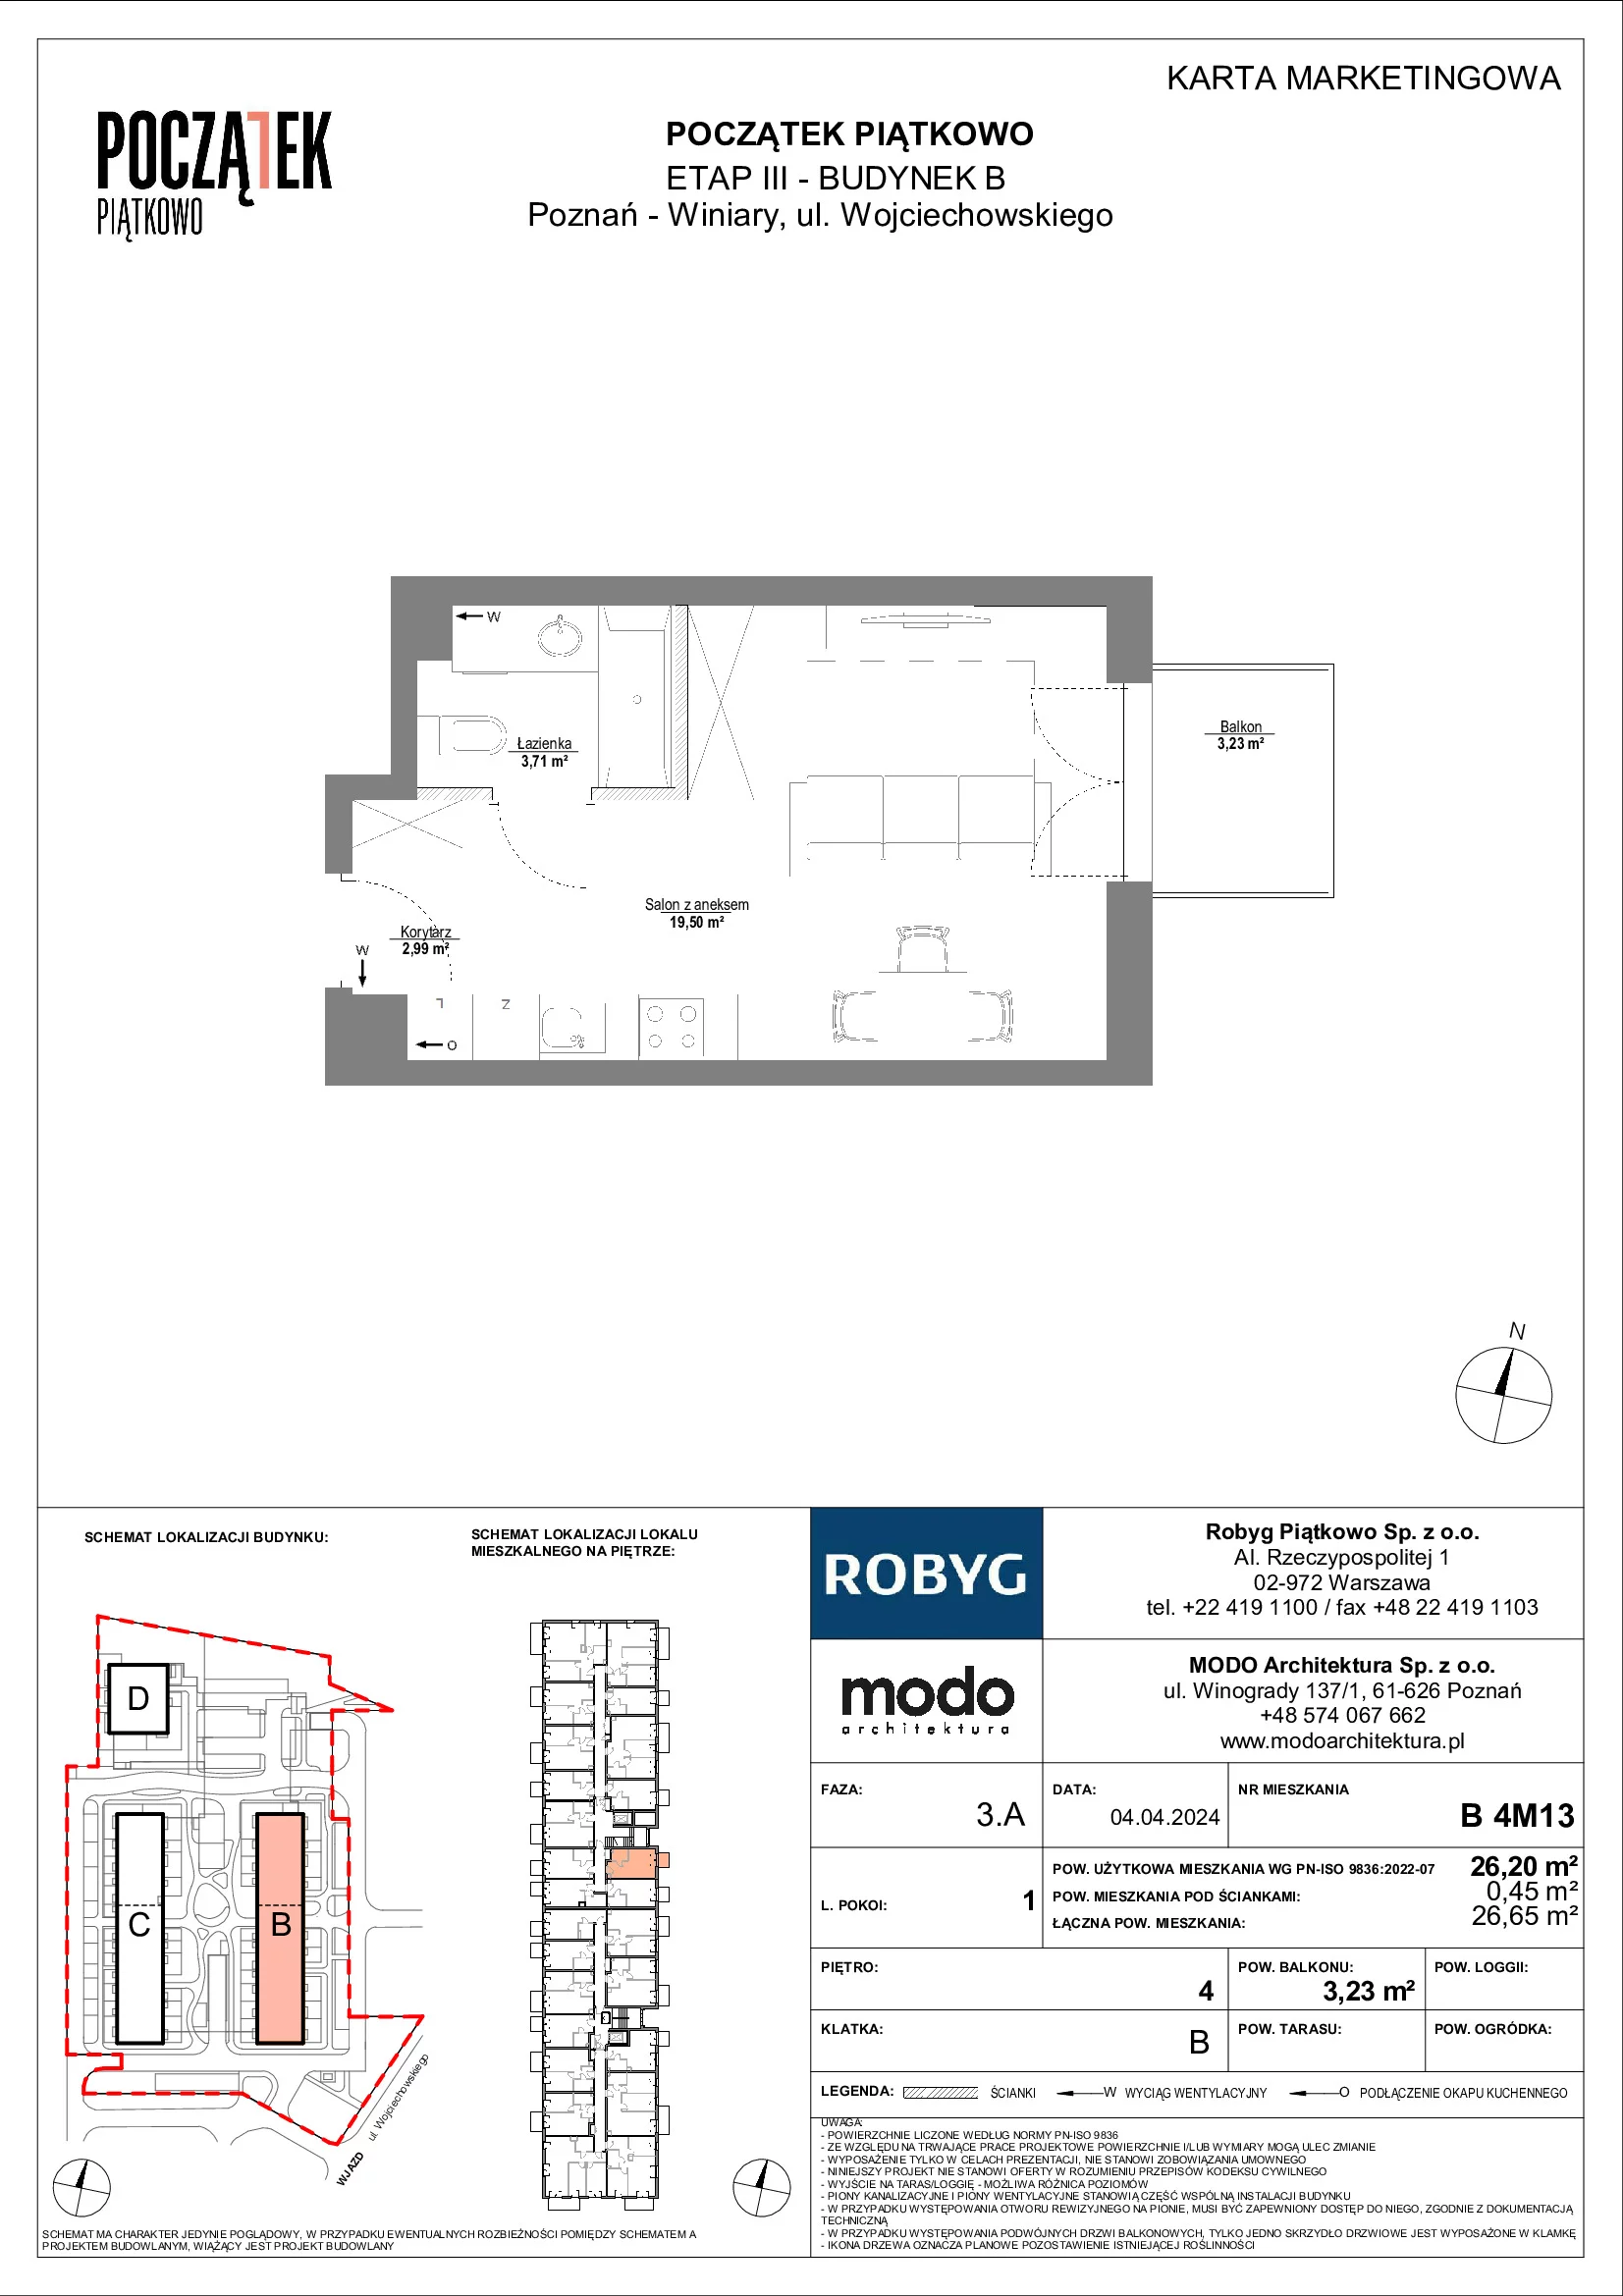 Mieszkanie 26,20 m², piętro 4, oferta nr B.4M13, Początek Piątkowo, Poznań, Piątkowo, ul. Wojciechowskiego